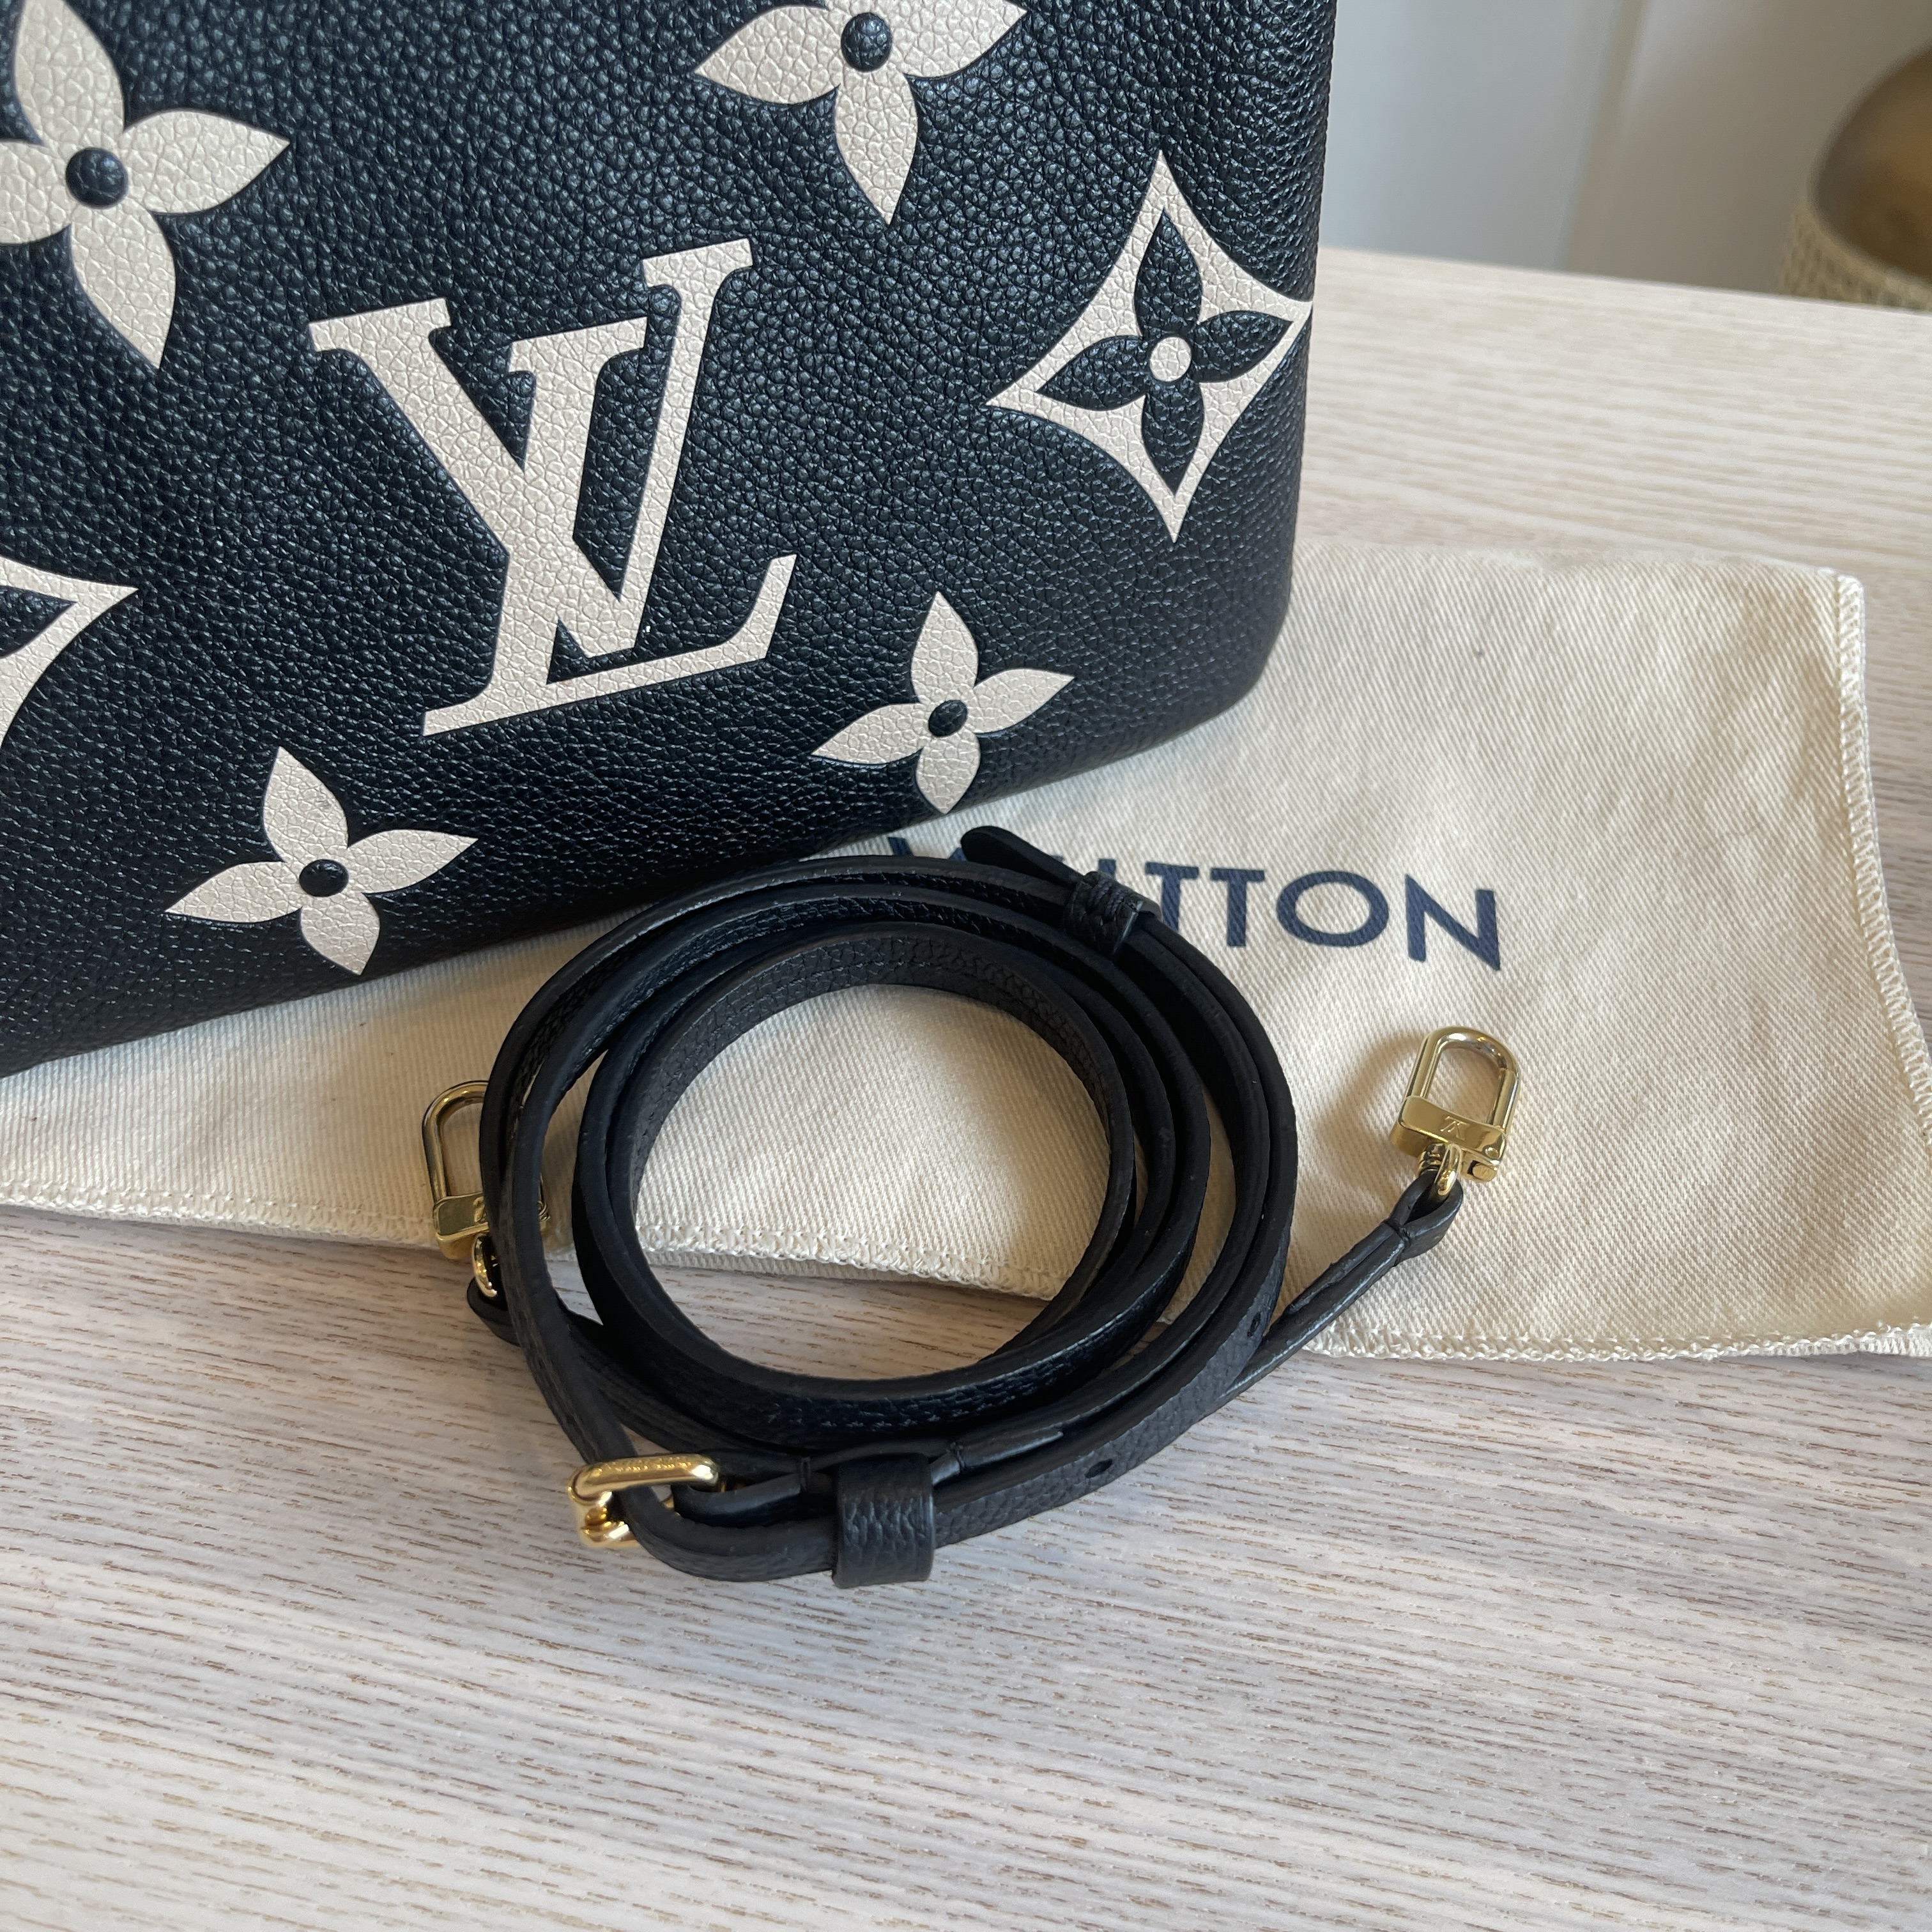 Louis Vuitton Black Monogram Empreinte Double Zip Pochette - ShopStyle  Shoulder Bags